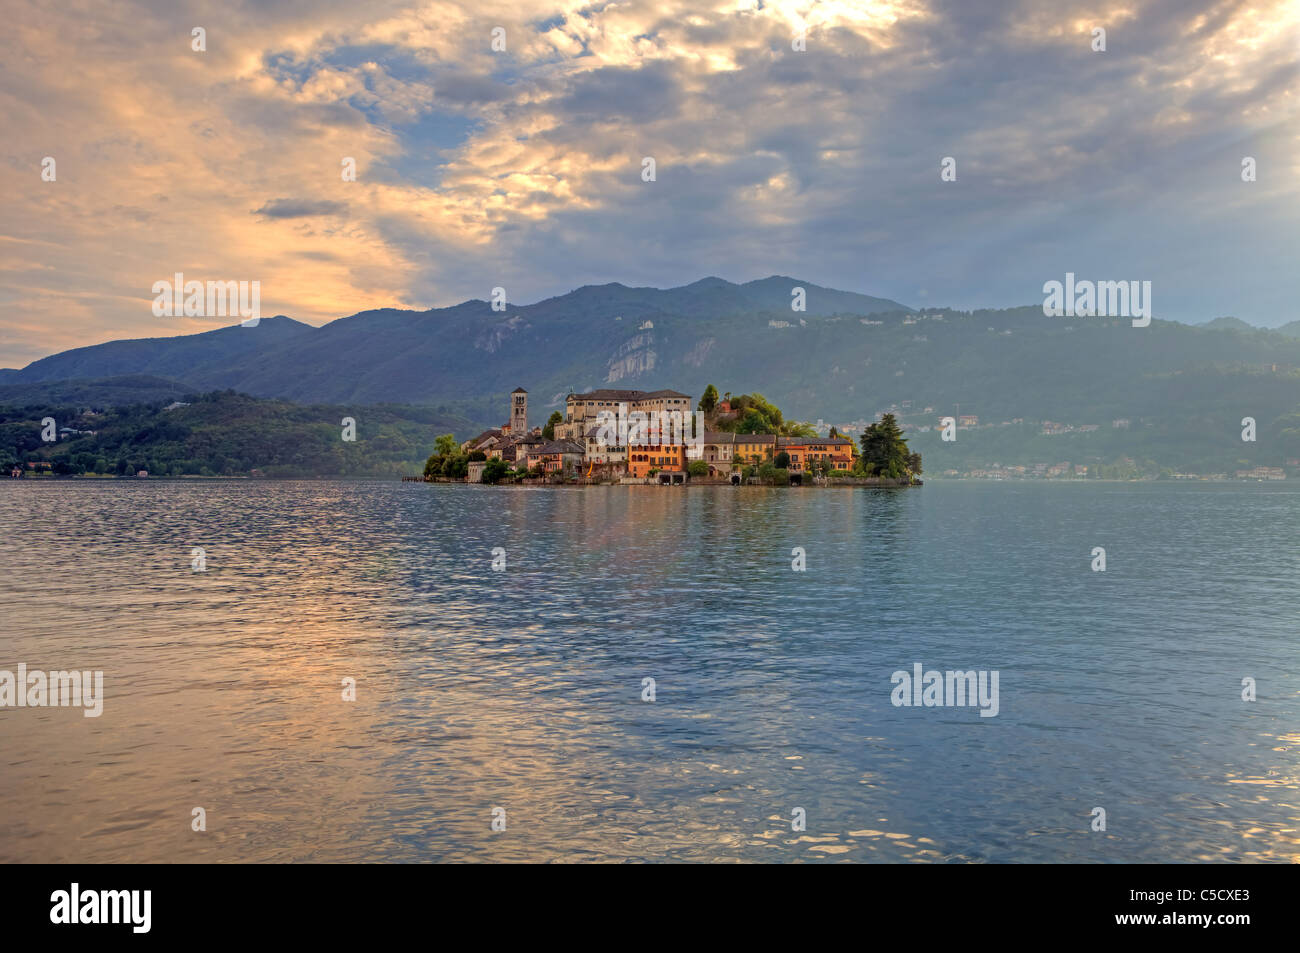 the island of San Giulio on Lake Orta in the evening sun Stock Photo